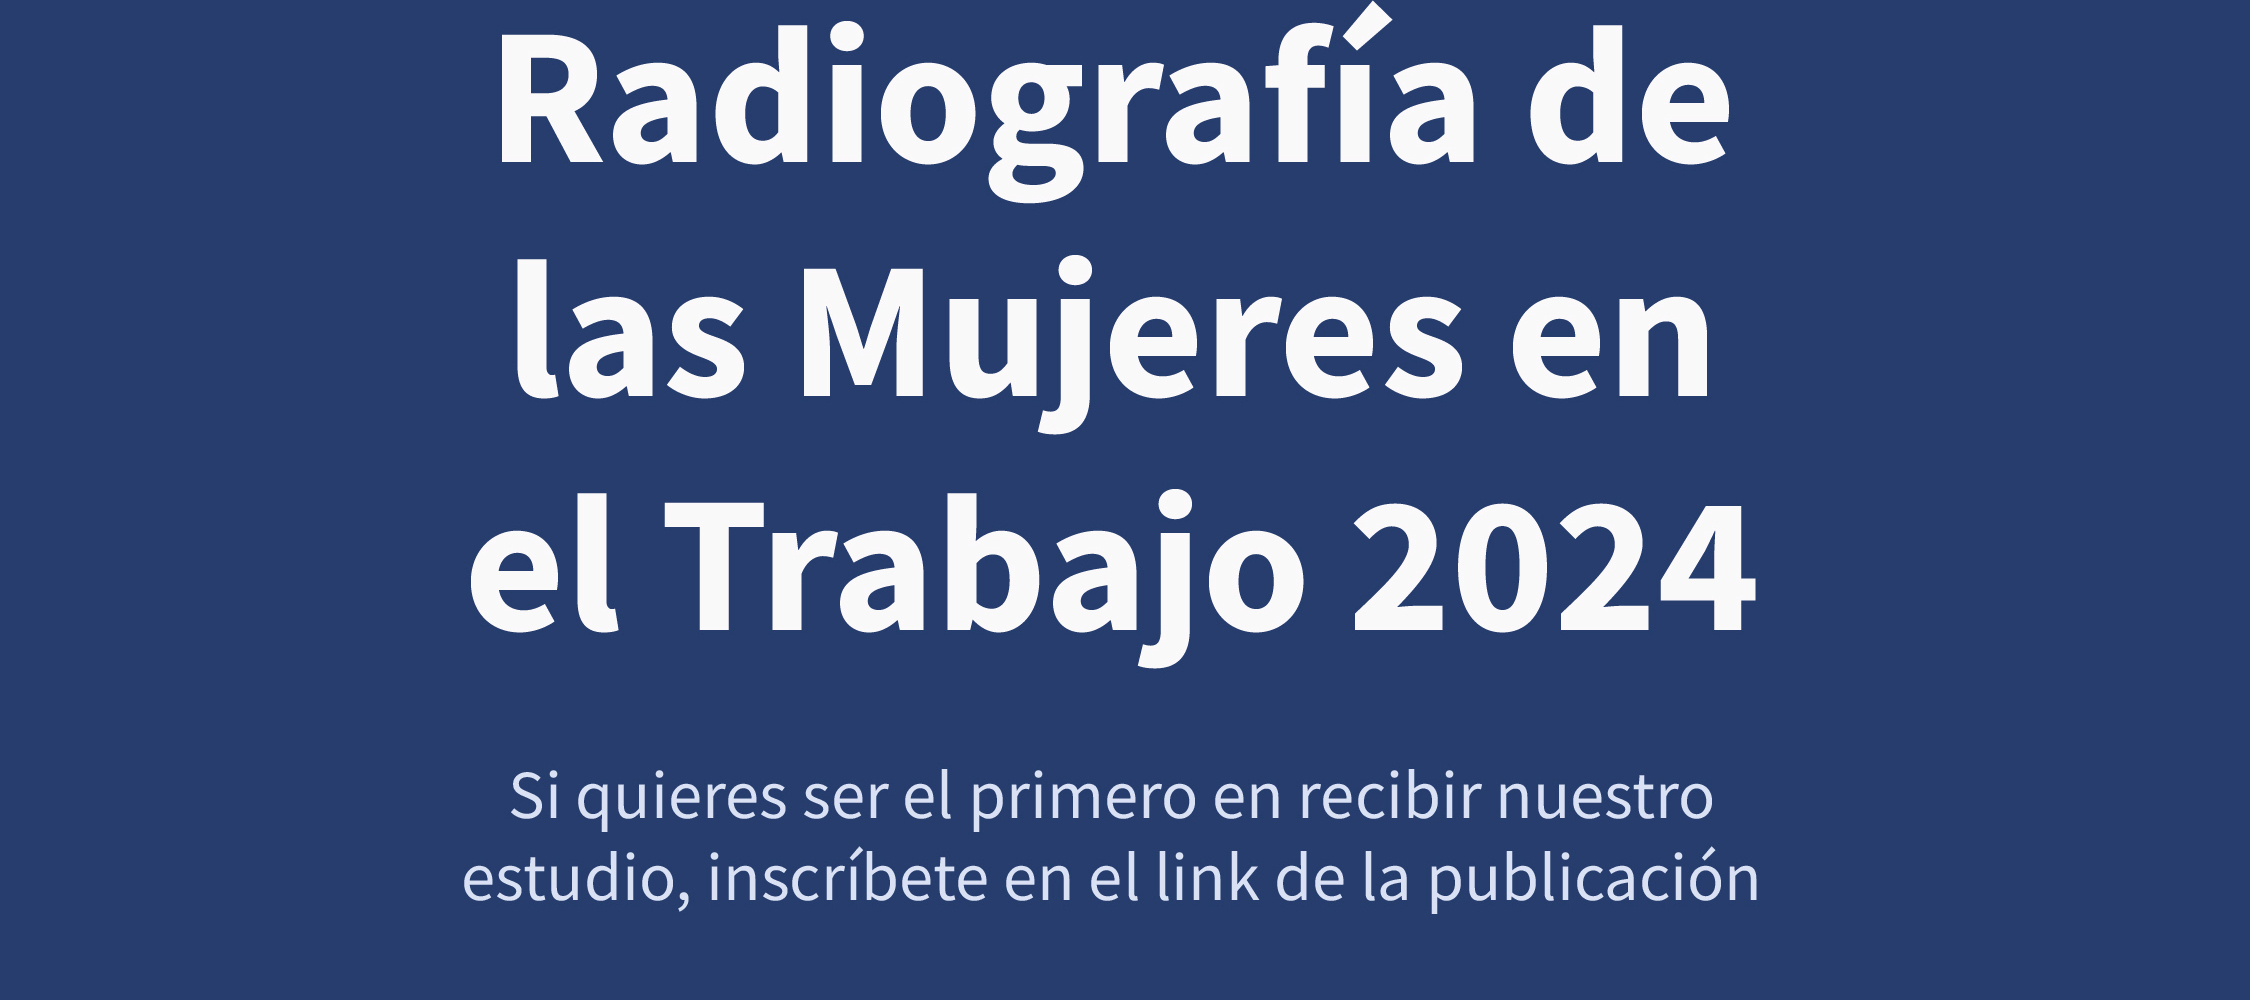 ⚠️Importante⚠️: "Radiografía de las Mujeres en el Trabajo 2024"💪